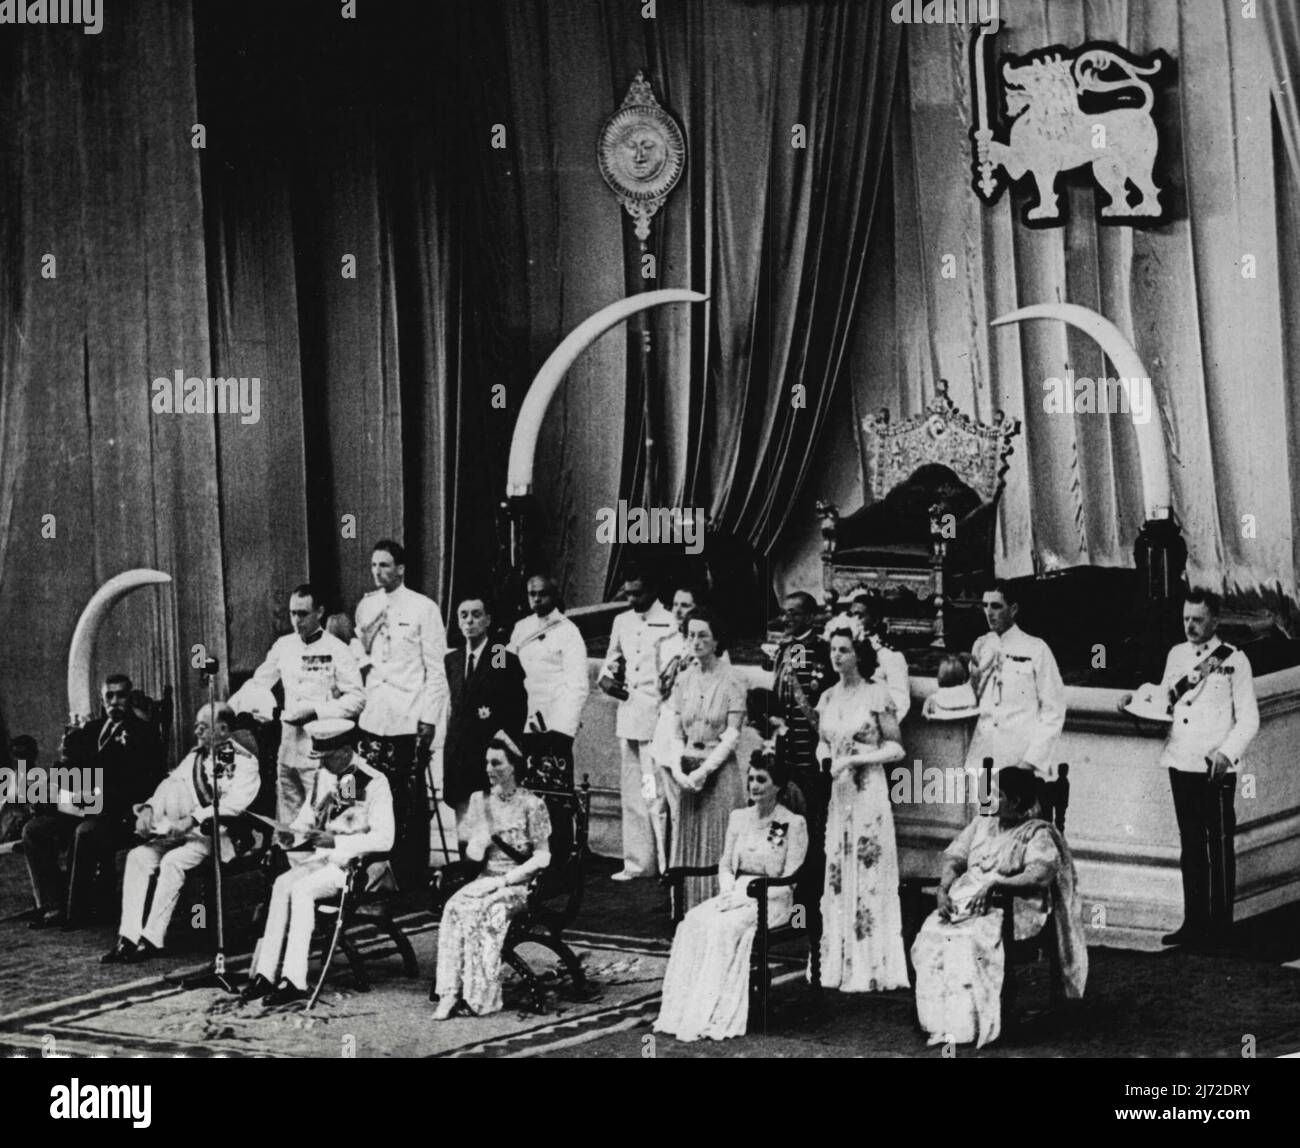 Ceylon guadagna Indipendenza -- (seduto, da sinistra a destra) D.S. Senanayake, primo Ministro di Ceylon; Sir Henry Moore, Governatore Generale di Ceylon; il Duca di Gloucester; la Duchessa di Gloucester; Lady Moore e la Signora D.S. Senanayake visto nella Sala dell'Assemblea, Colombo il 10 febbraio, quando il duca di Gloucester inaugurò il dominio del Parlamento di Ceylon. Dietro di loro c'è il Trono Rosso e Oro dei re Kandan di Ceylon. Febbraio 26, 1948. (Foto di stampa associata). Foto Stock